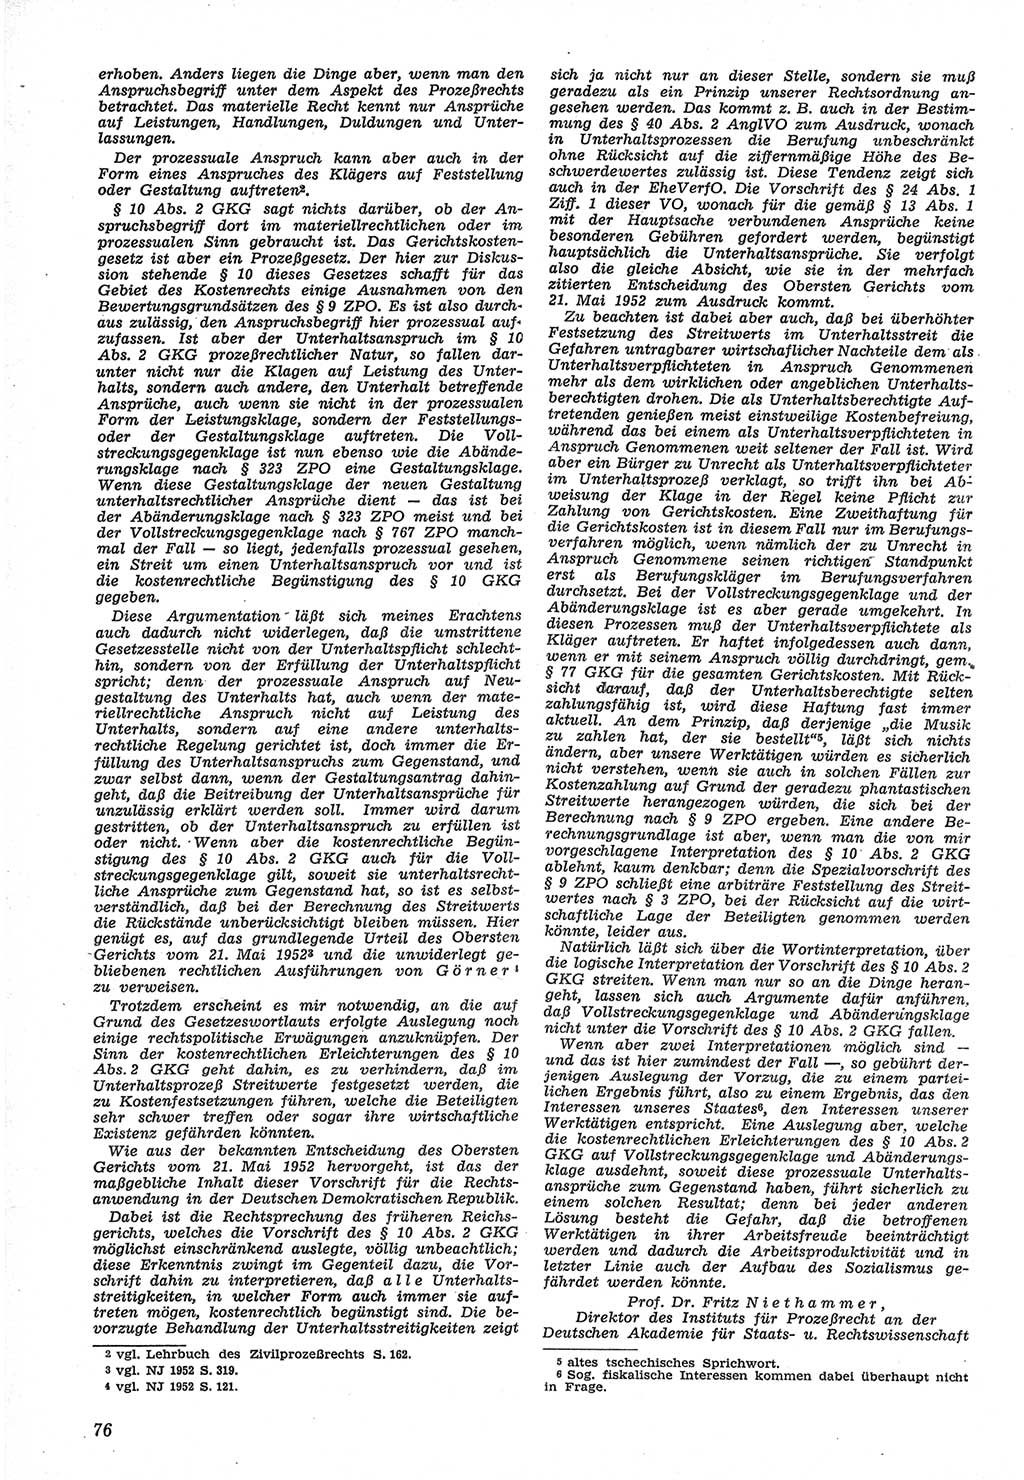 Neue Justiz (NJ), Zeitschrift für Recht und Rechtswissenschaft [Deutsche Demokratische Republik (DDR)], 12. Jahrgang 1958, Seite 76 (NJ DDR 1958, S. 76)